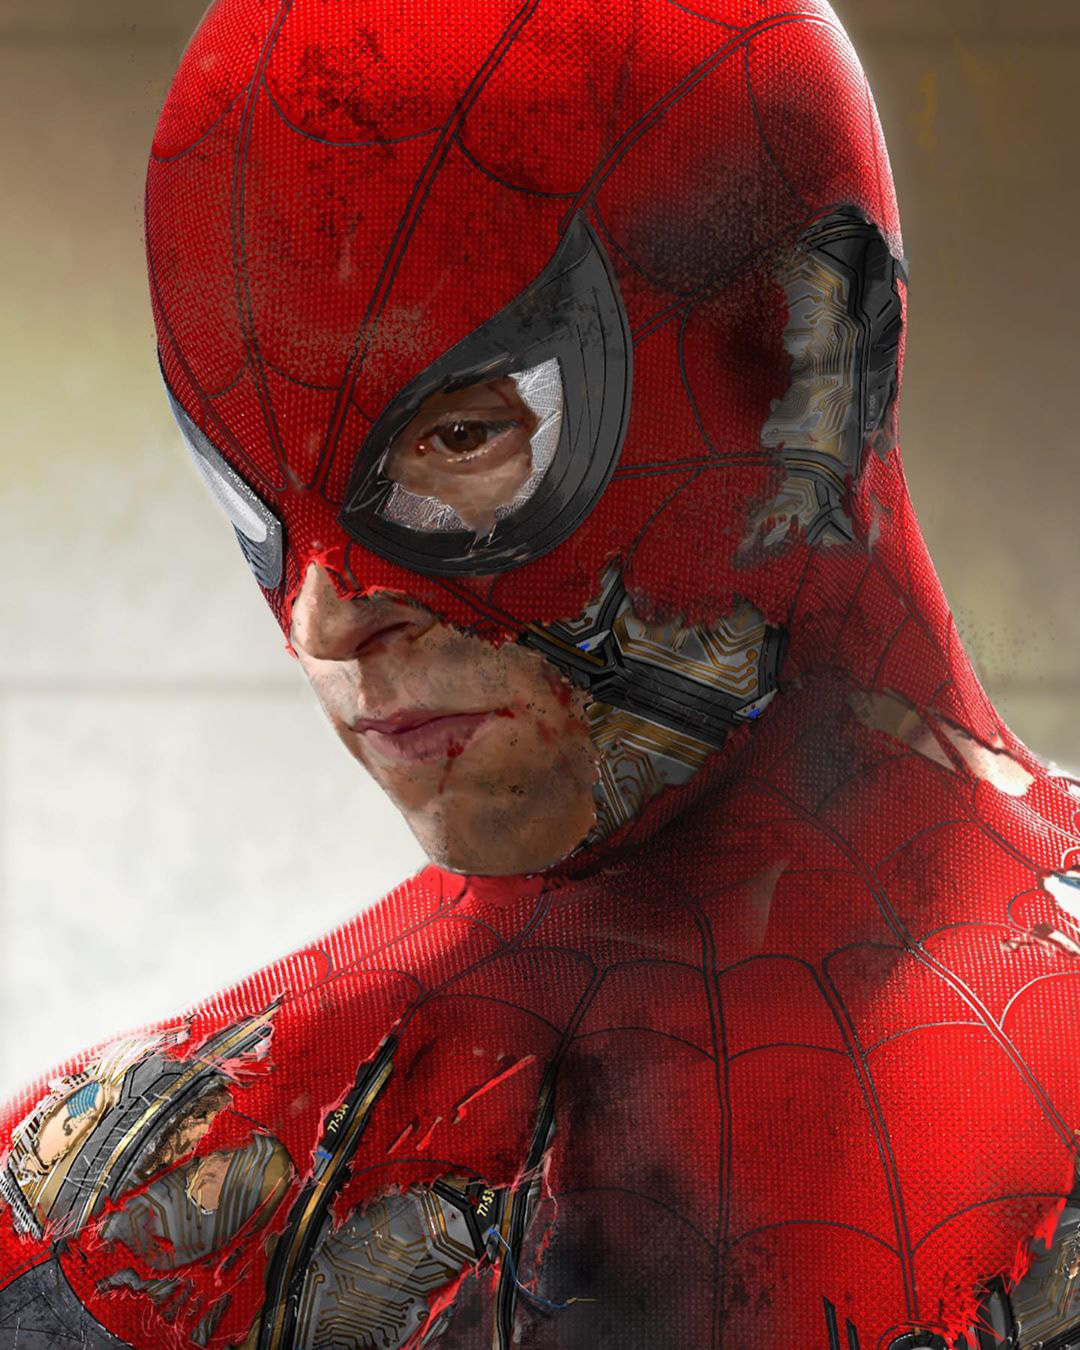 Hóa Ra Đây Là Thiết Kế Bên Trong Chiếc Mặt Nạ Của Spider-Man, Khá Là Cool  Ngầu